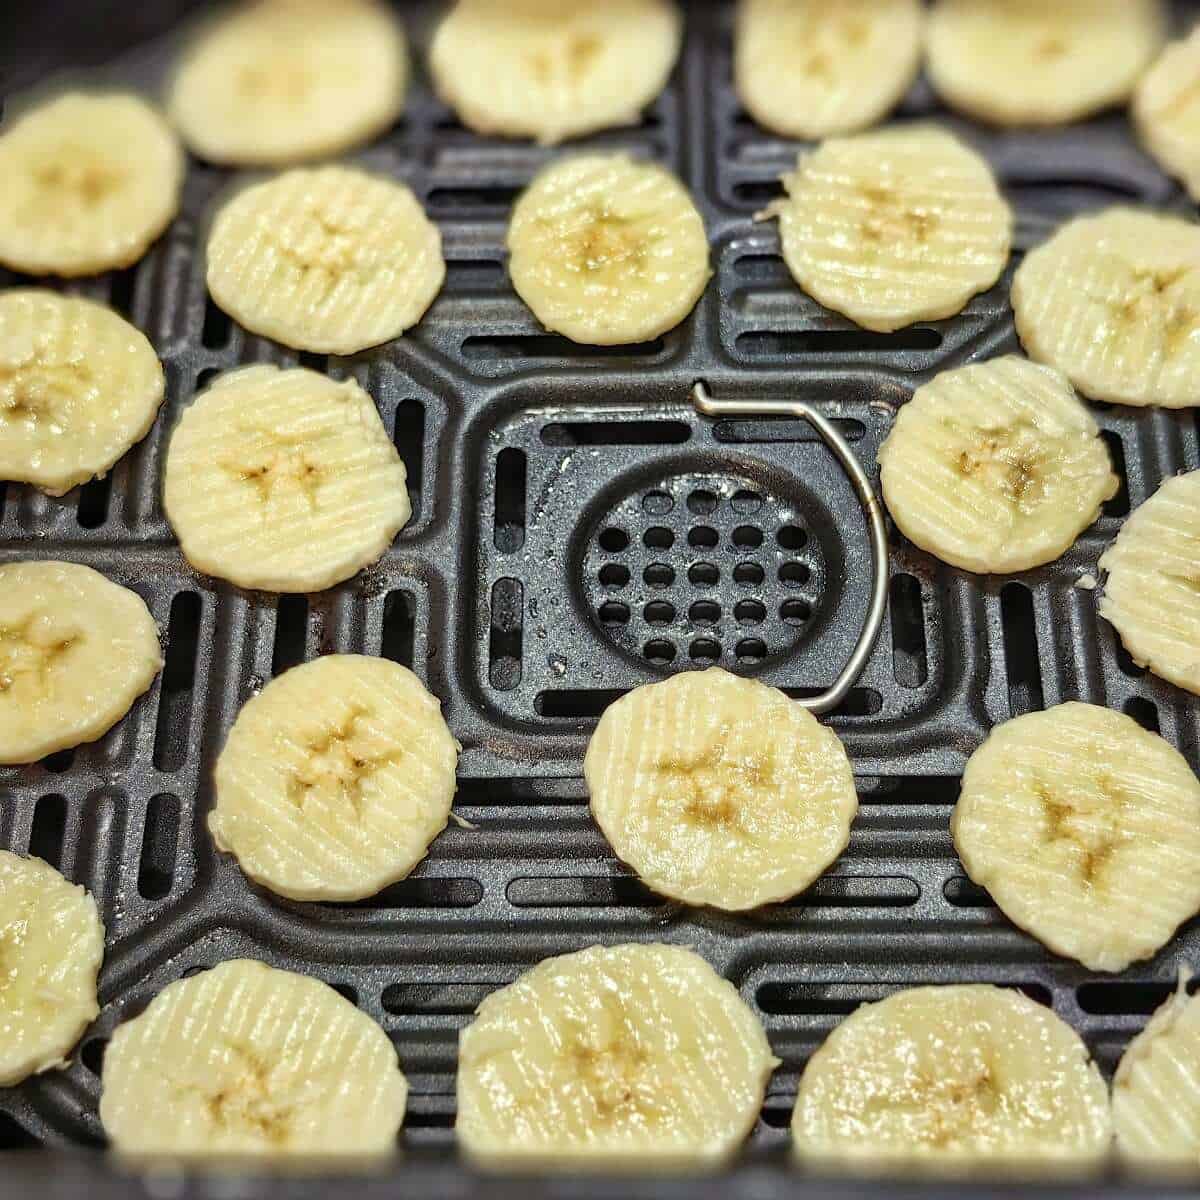 banana chips inside an air fryer